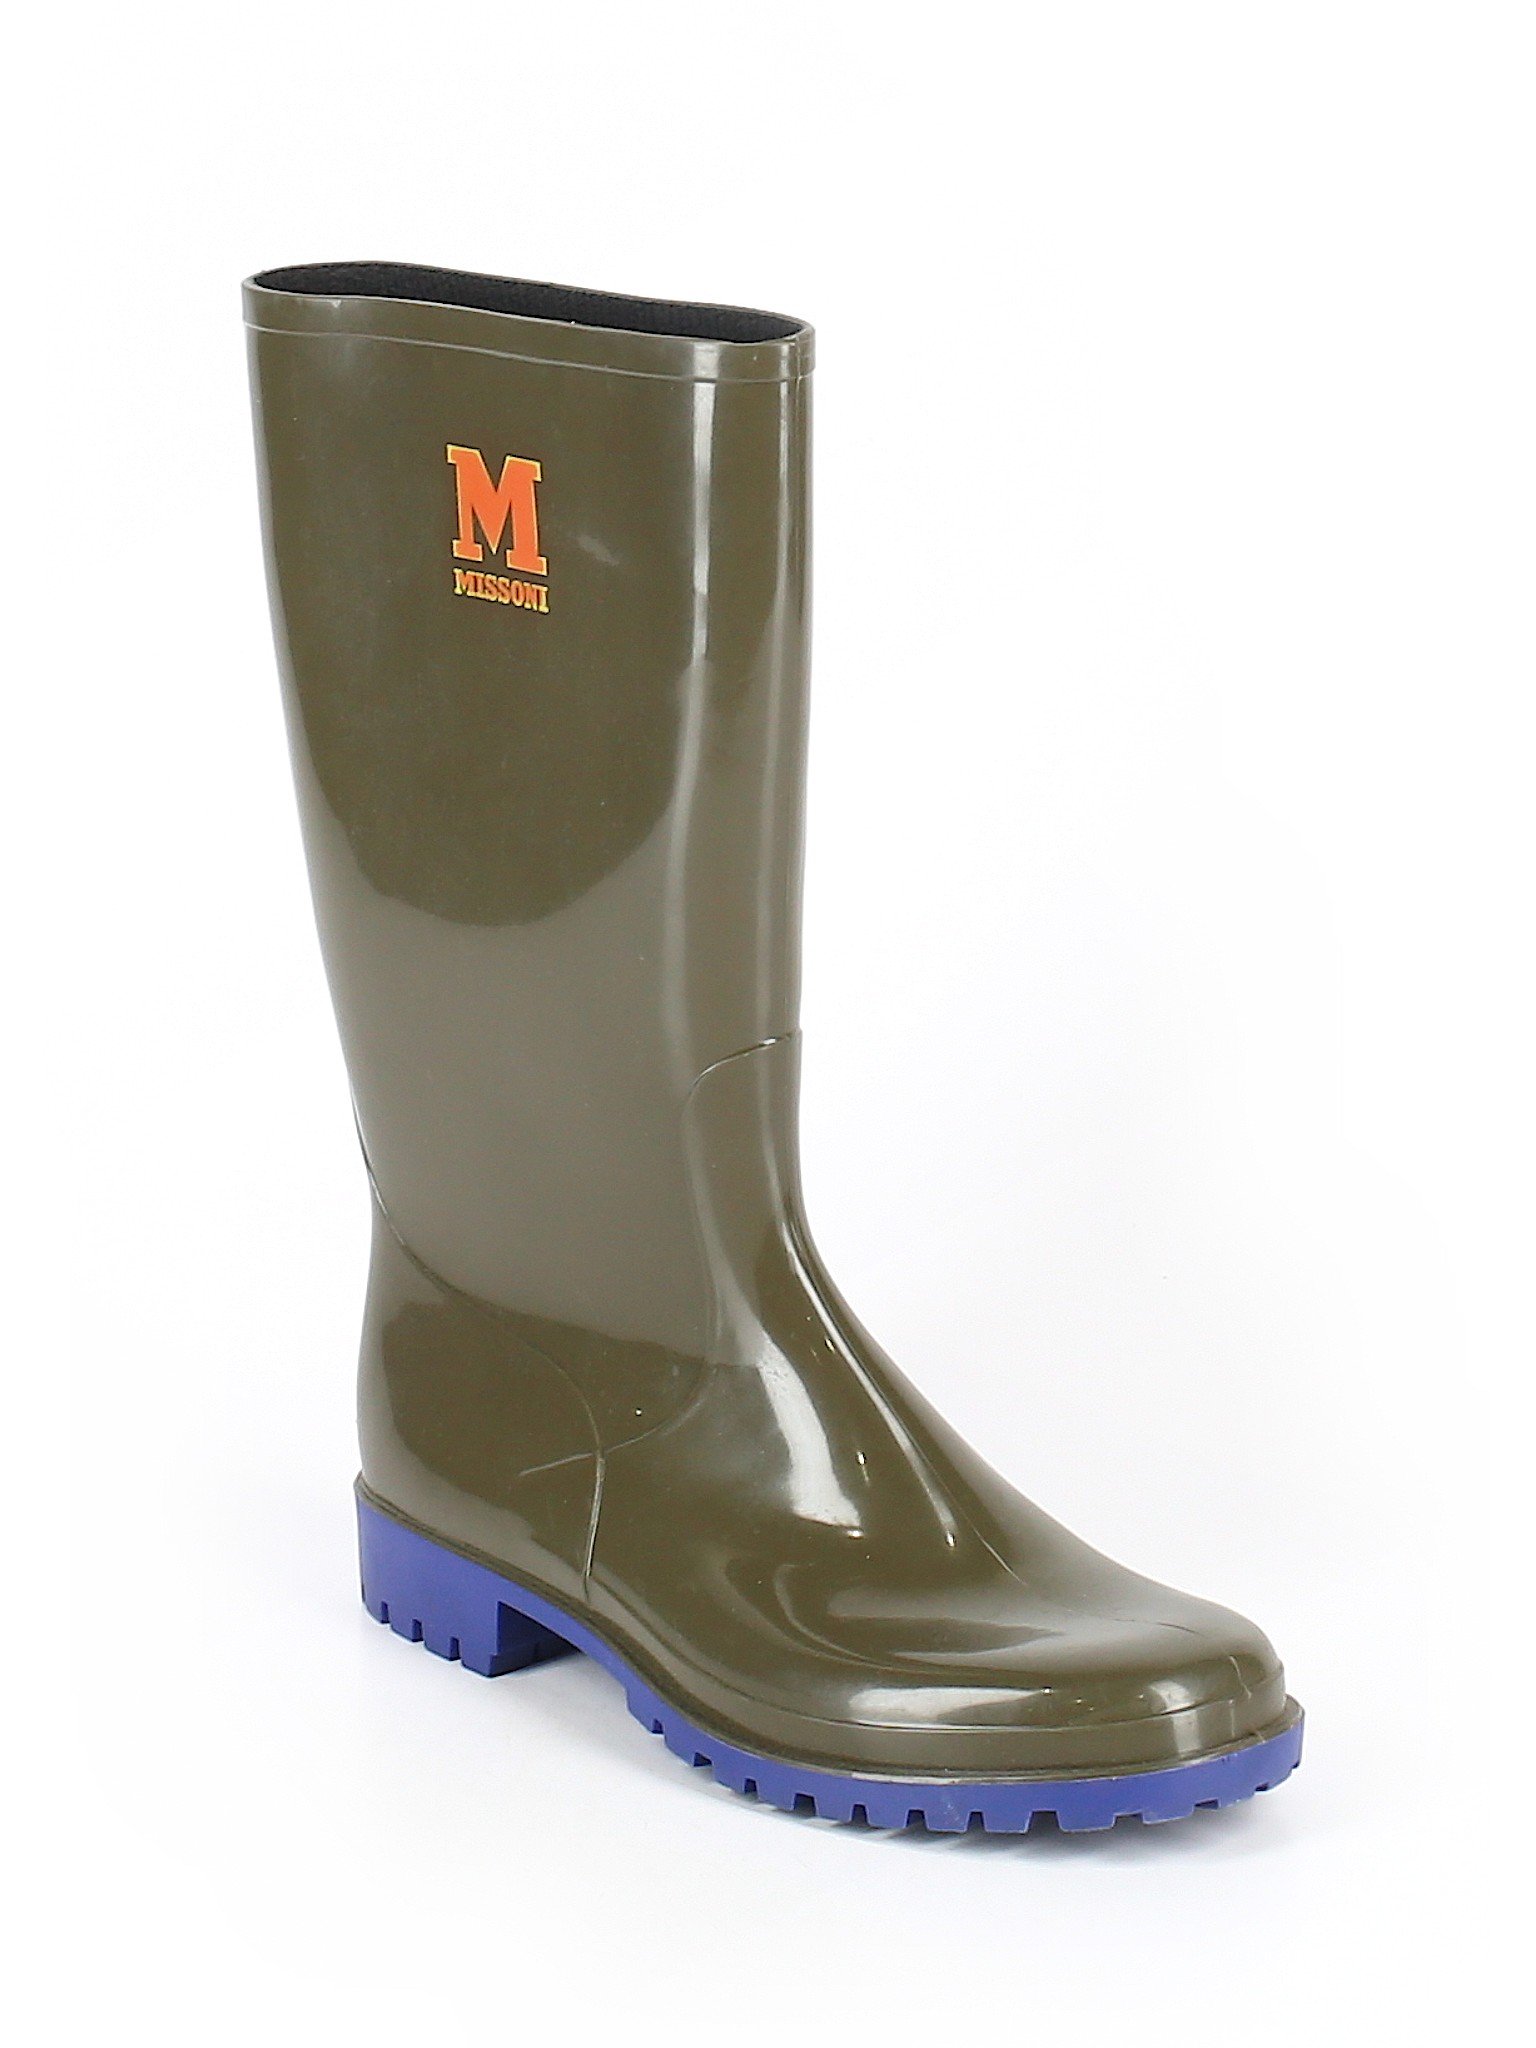 M Missoni Print Dark Green Rain Boots 